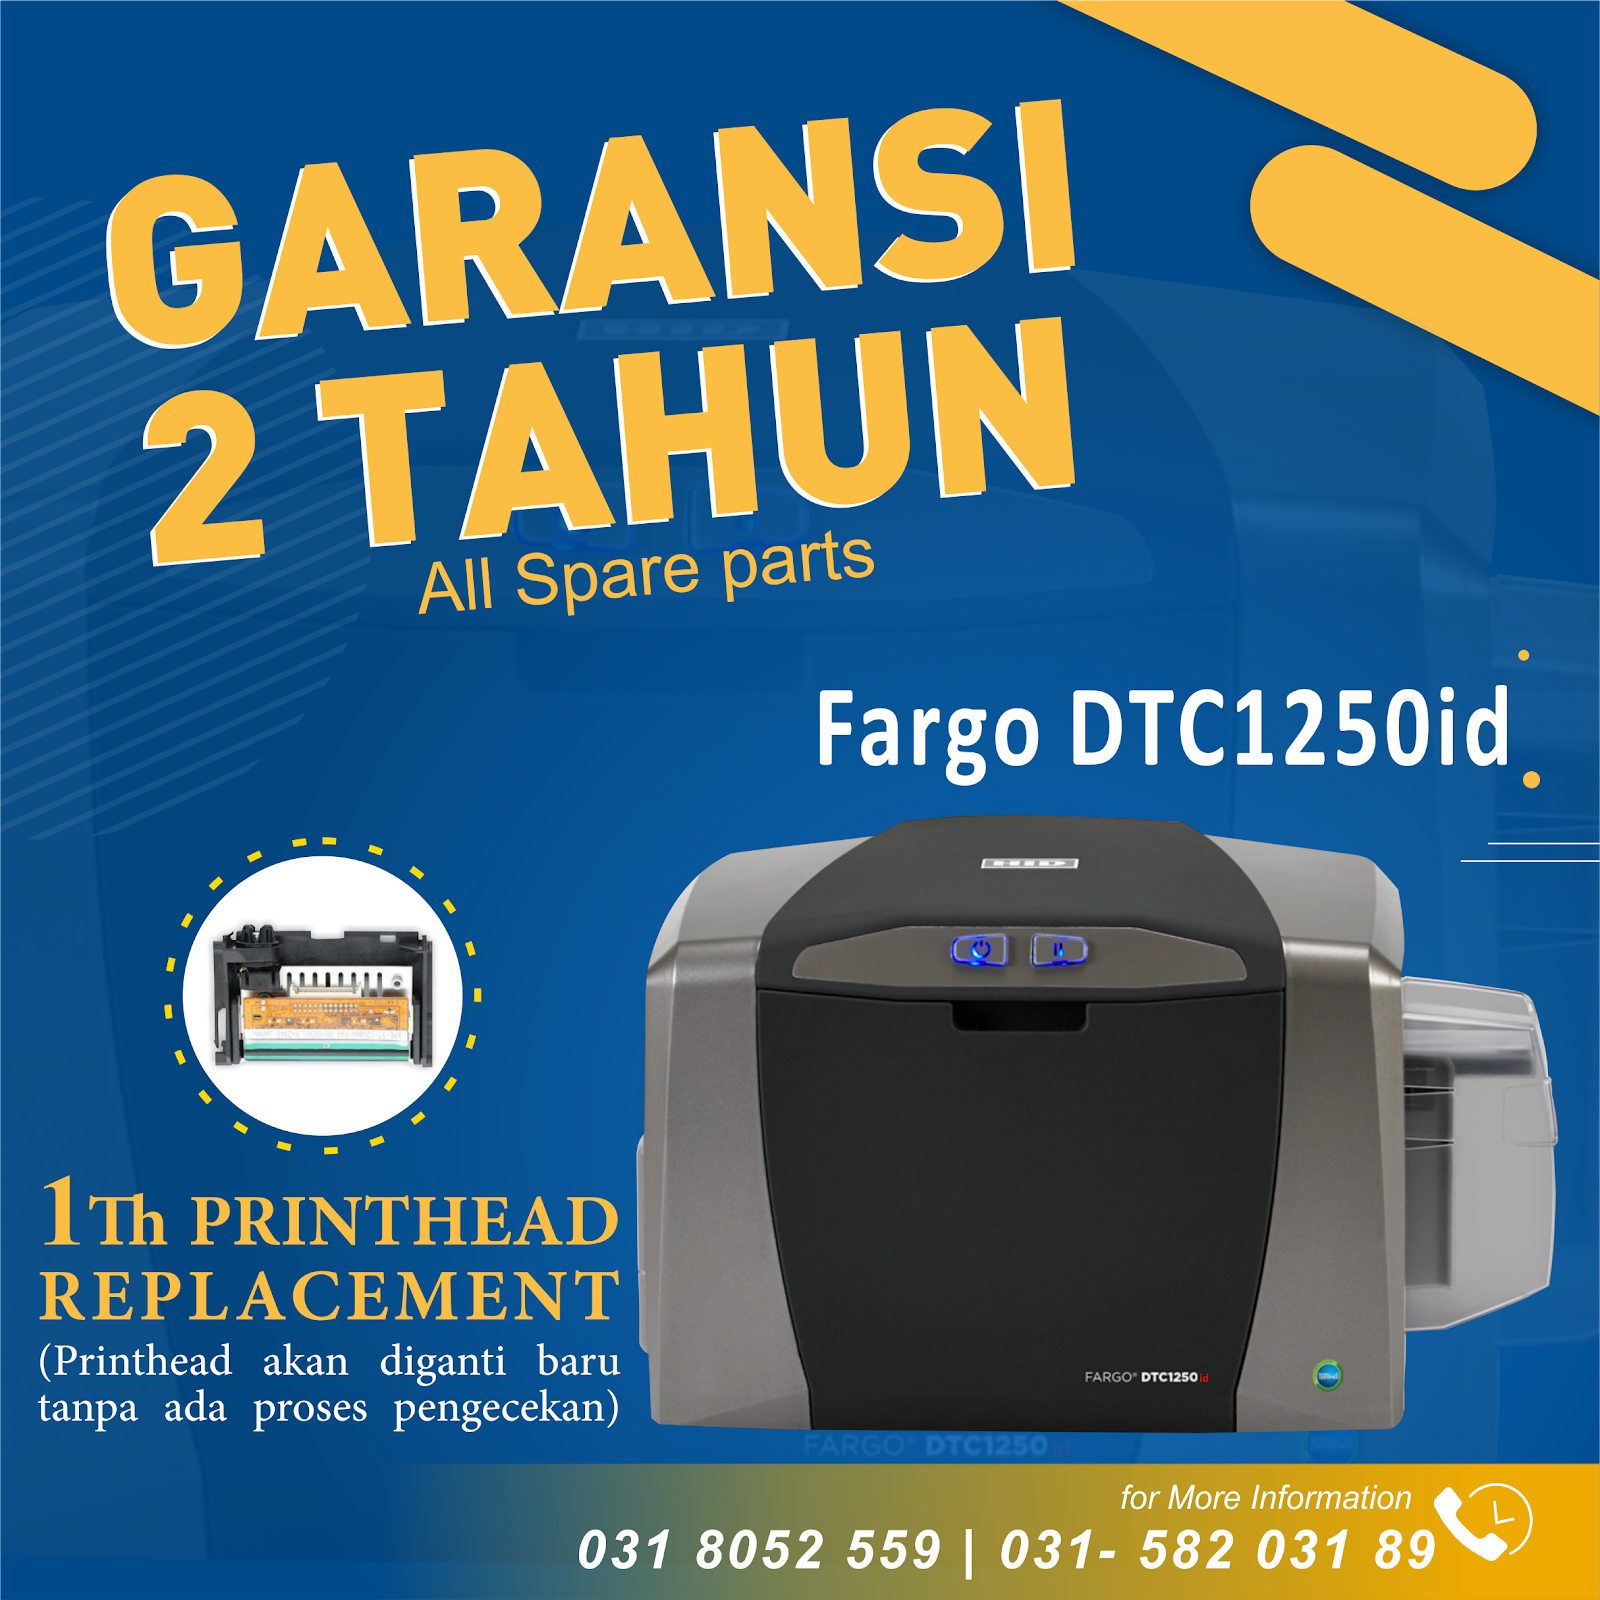 Printer Kartu GARANSI 2 TAHUN